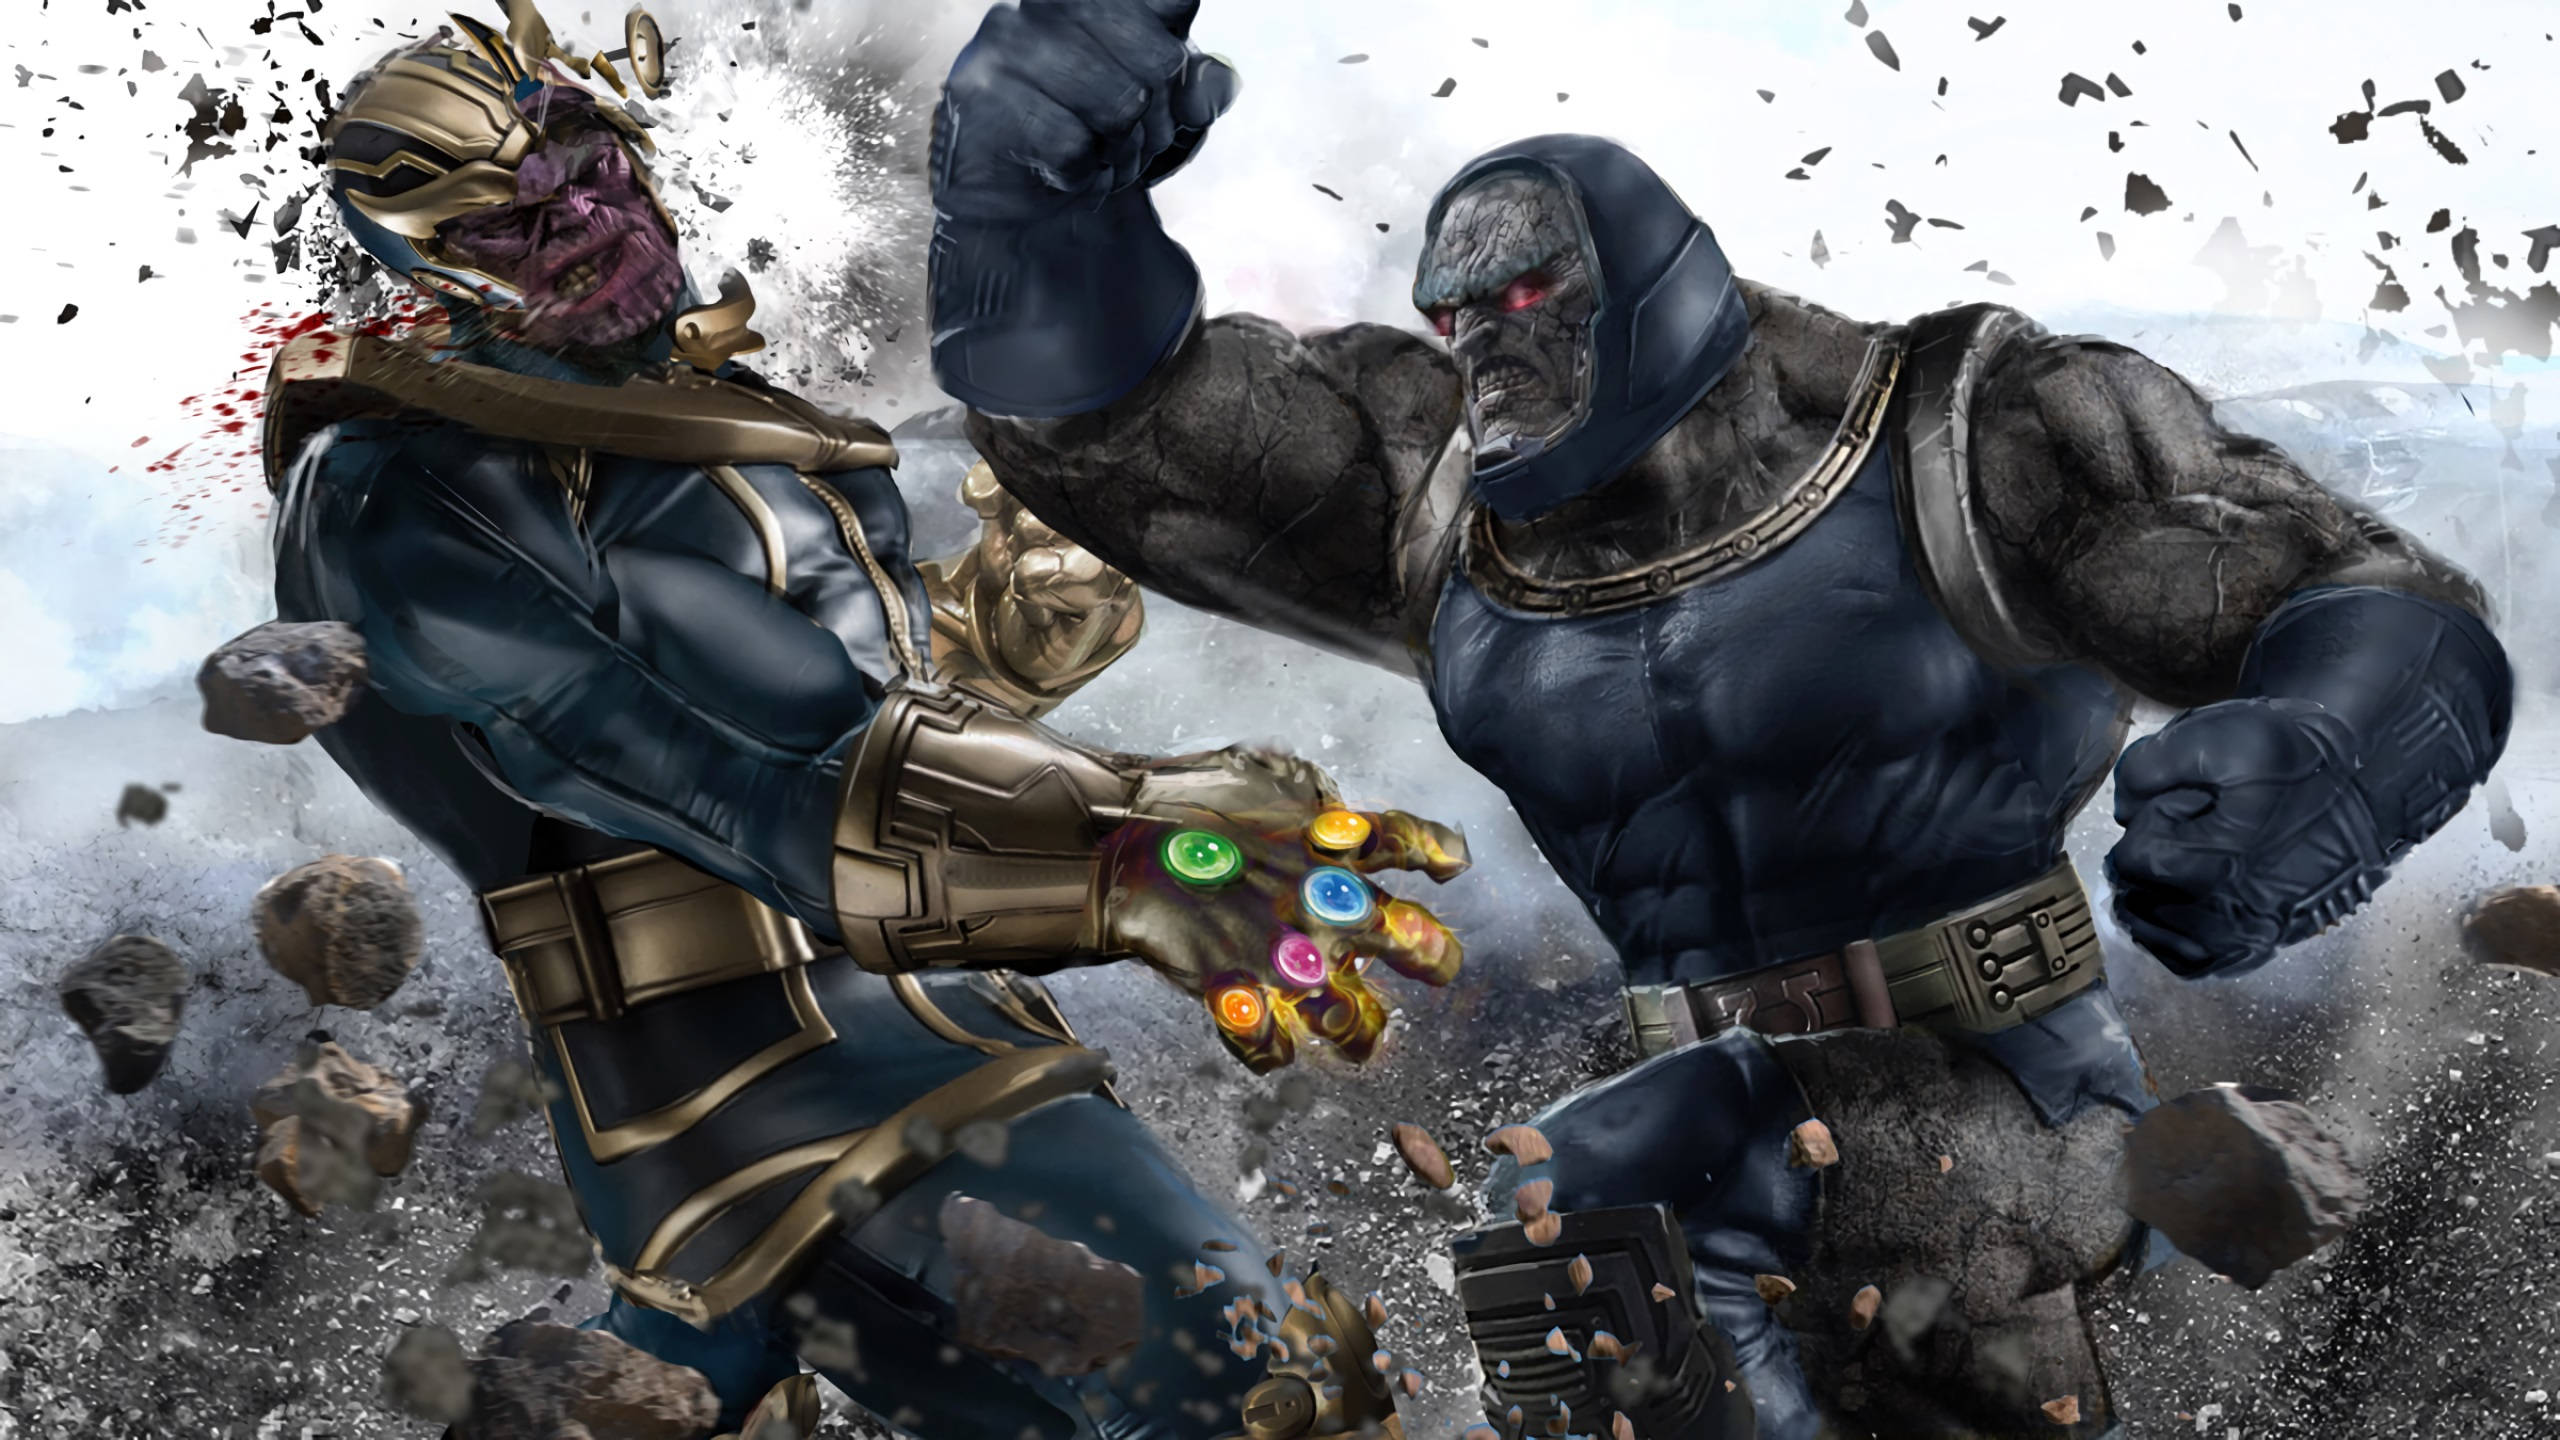 2560x1440 Marvel Thanos Vs Darkseid